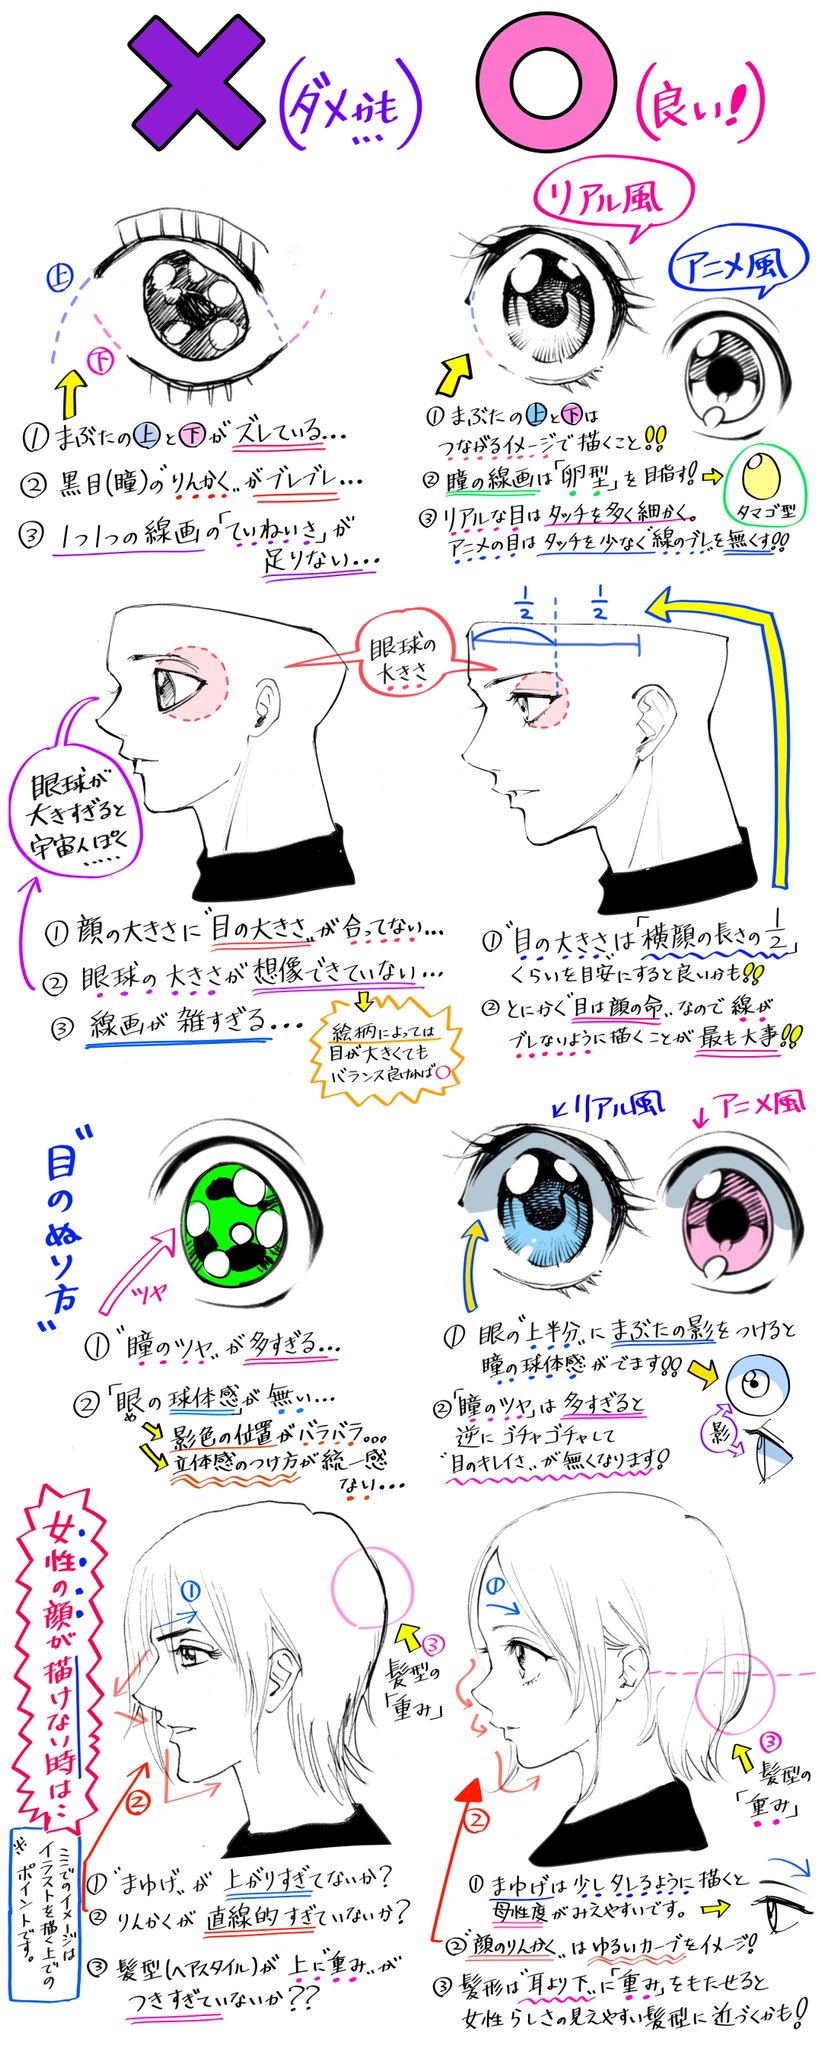 吉村拓也 イラスト講座 目の描き方 男女の目のデフォルメ が上達する ダメかも と 良いかも T Co Gsdolortka Twitter